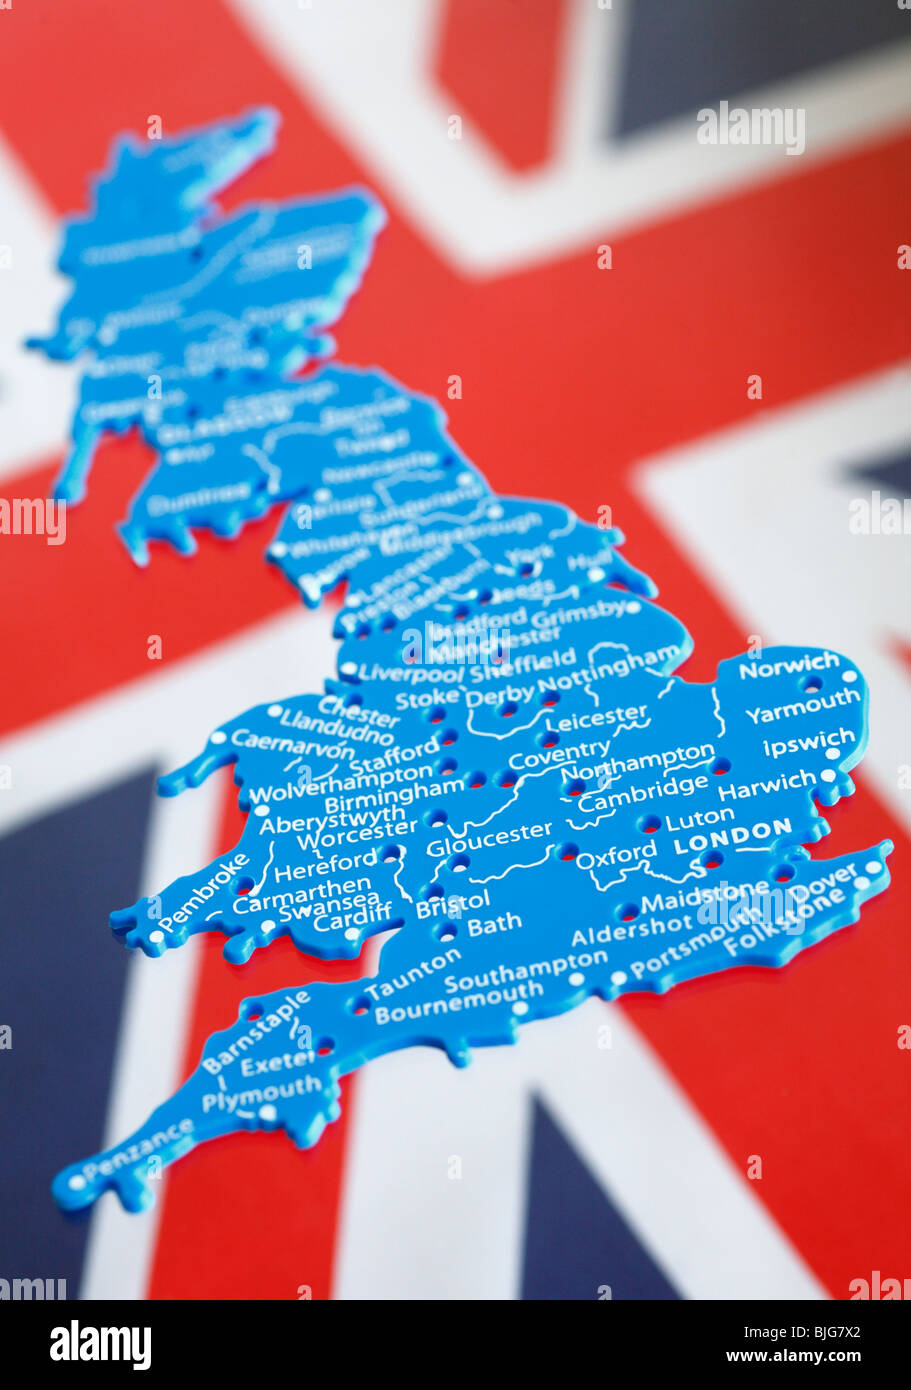 Kunststoff-Schablone des Vereinigten Königreichs gegen die Union Jack-Flagge gesetzt. Stockfoto